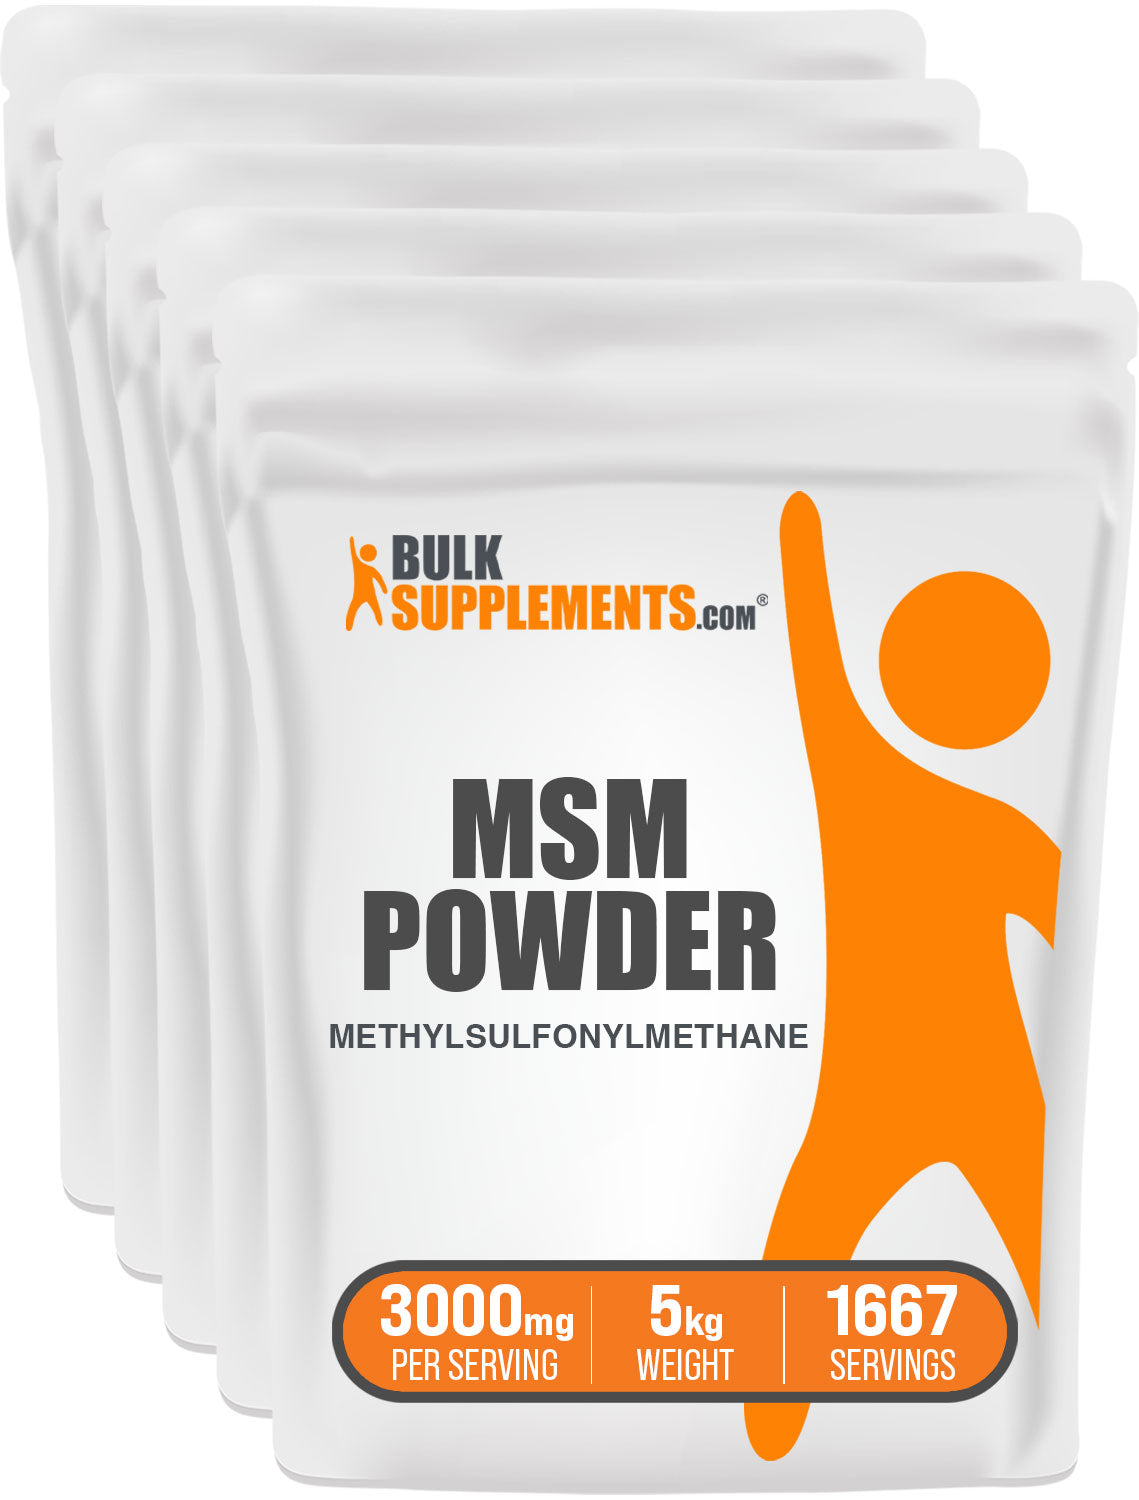 BulkSupplements MSM Powder Methylsulfonylmethane 5kg bag